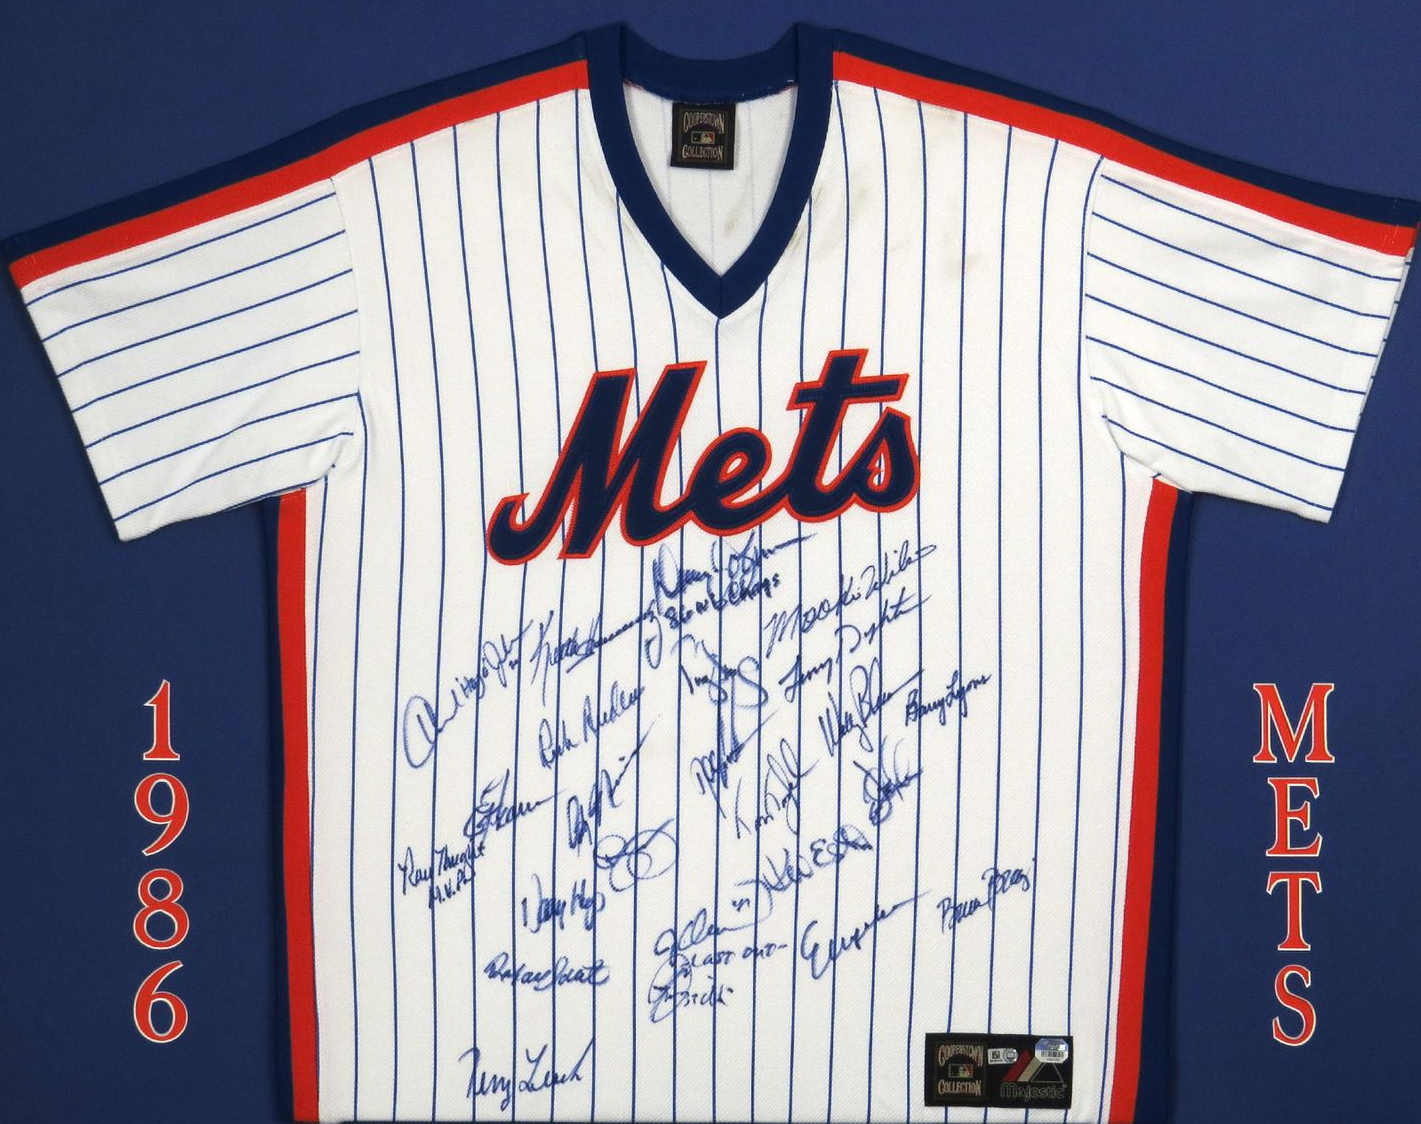 1986 new york mets jersey